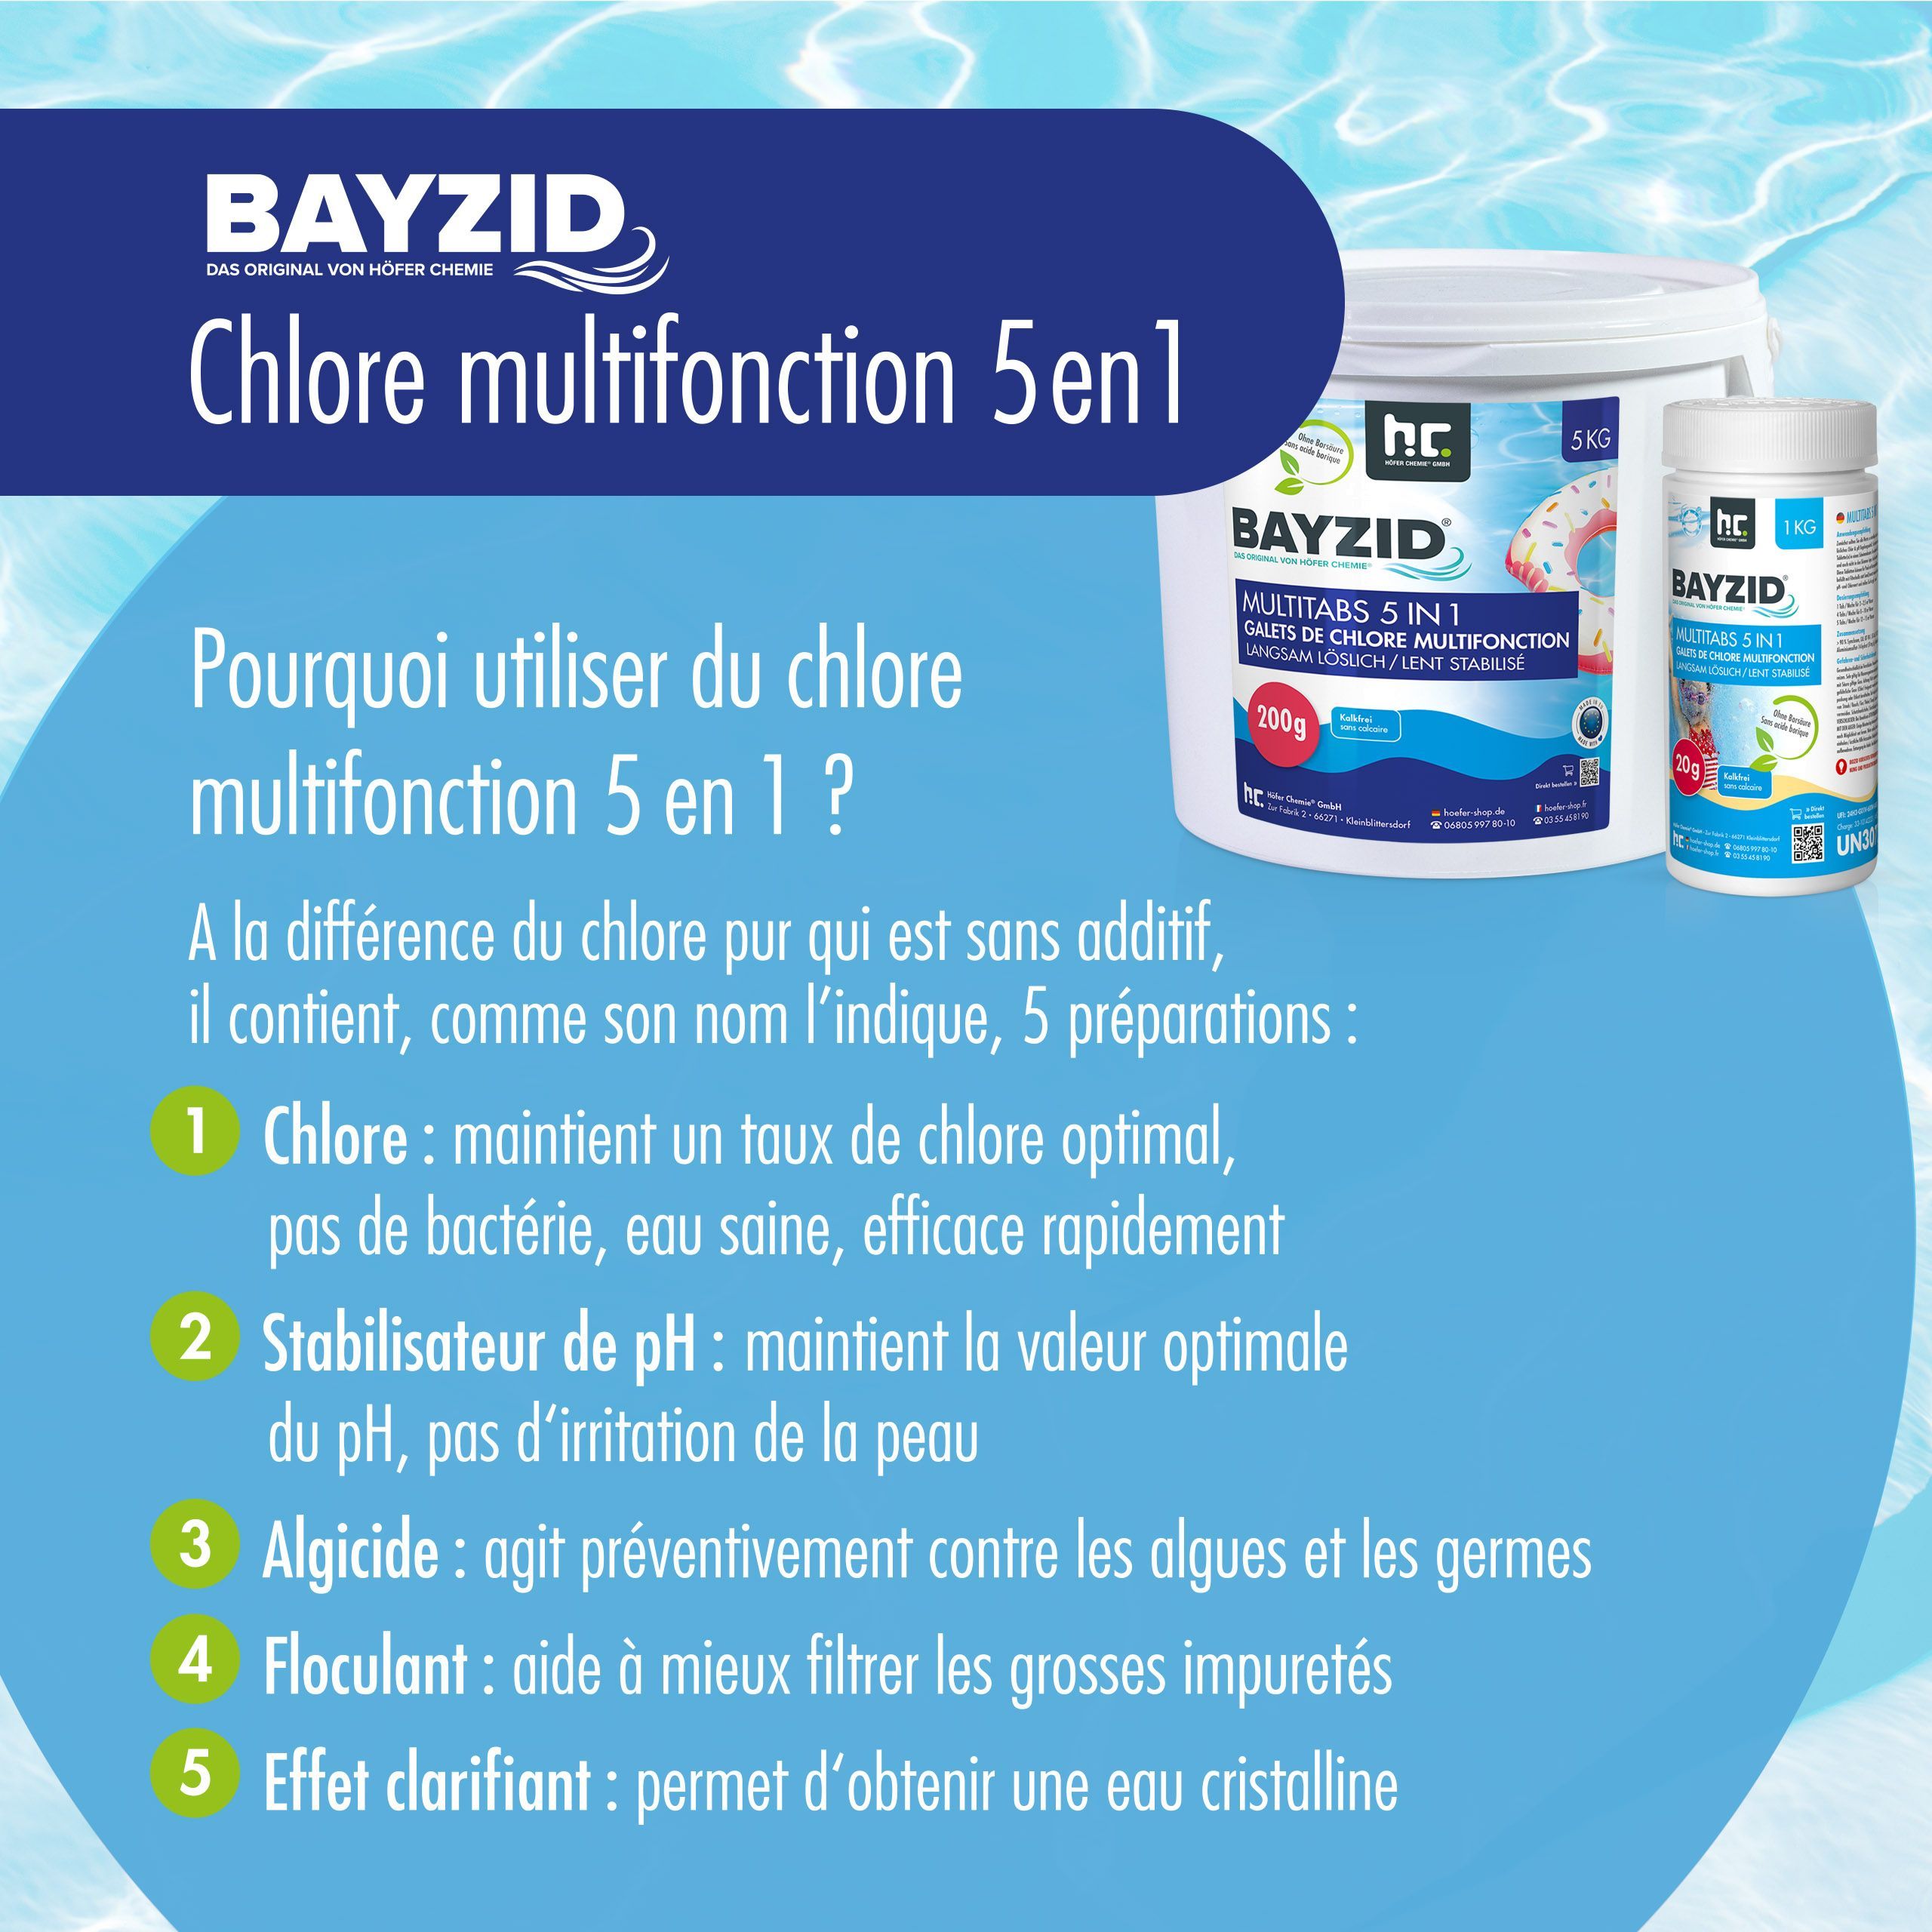 5 kg BAYZID® Multitabs 20g 5in1 für Pools